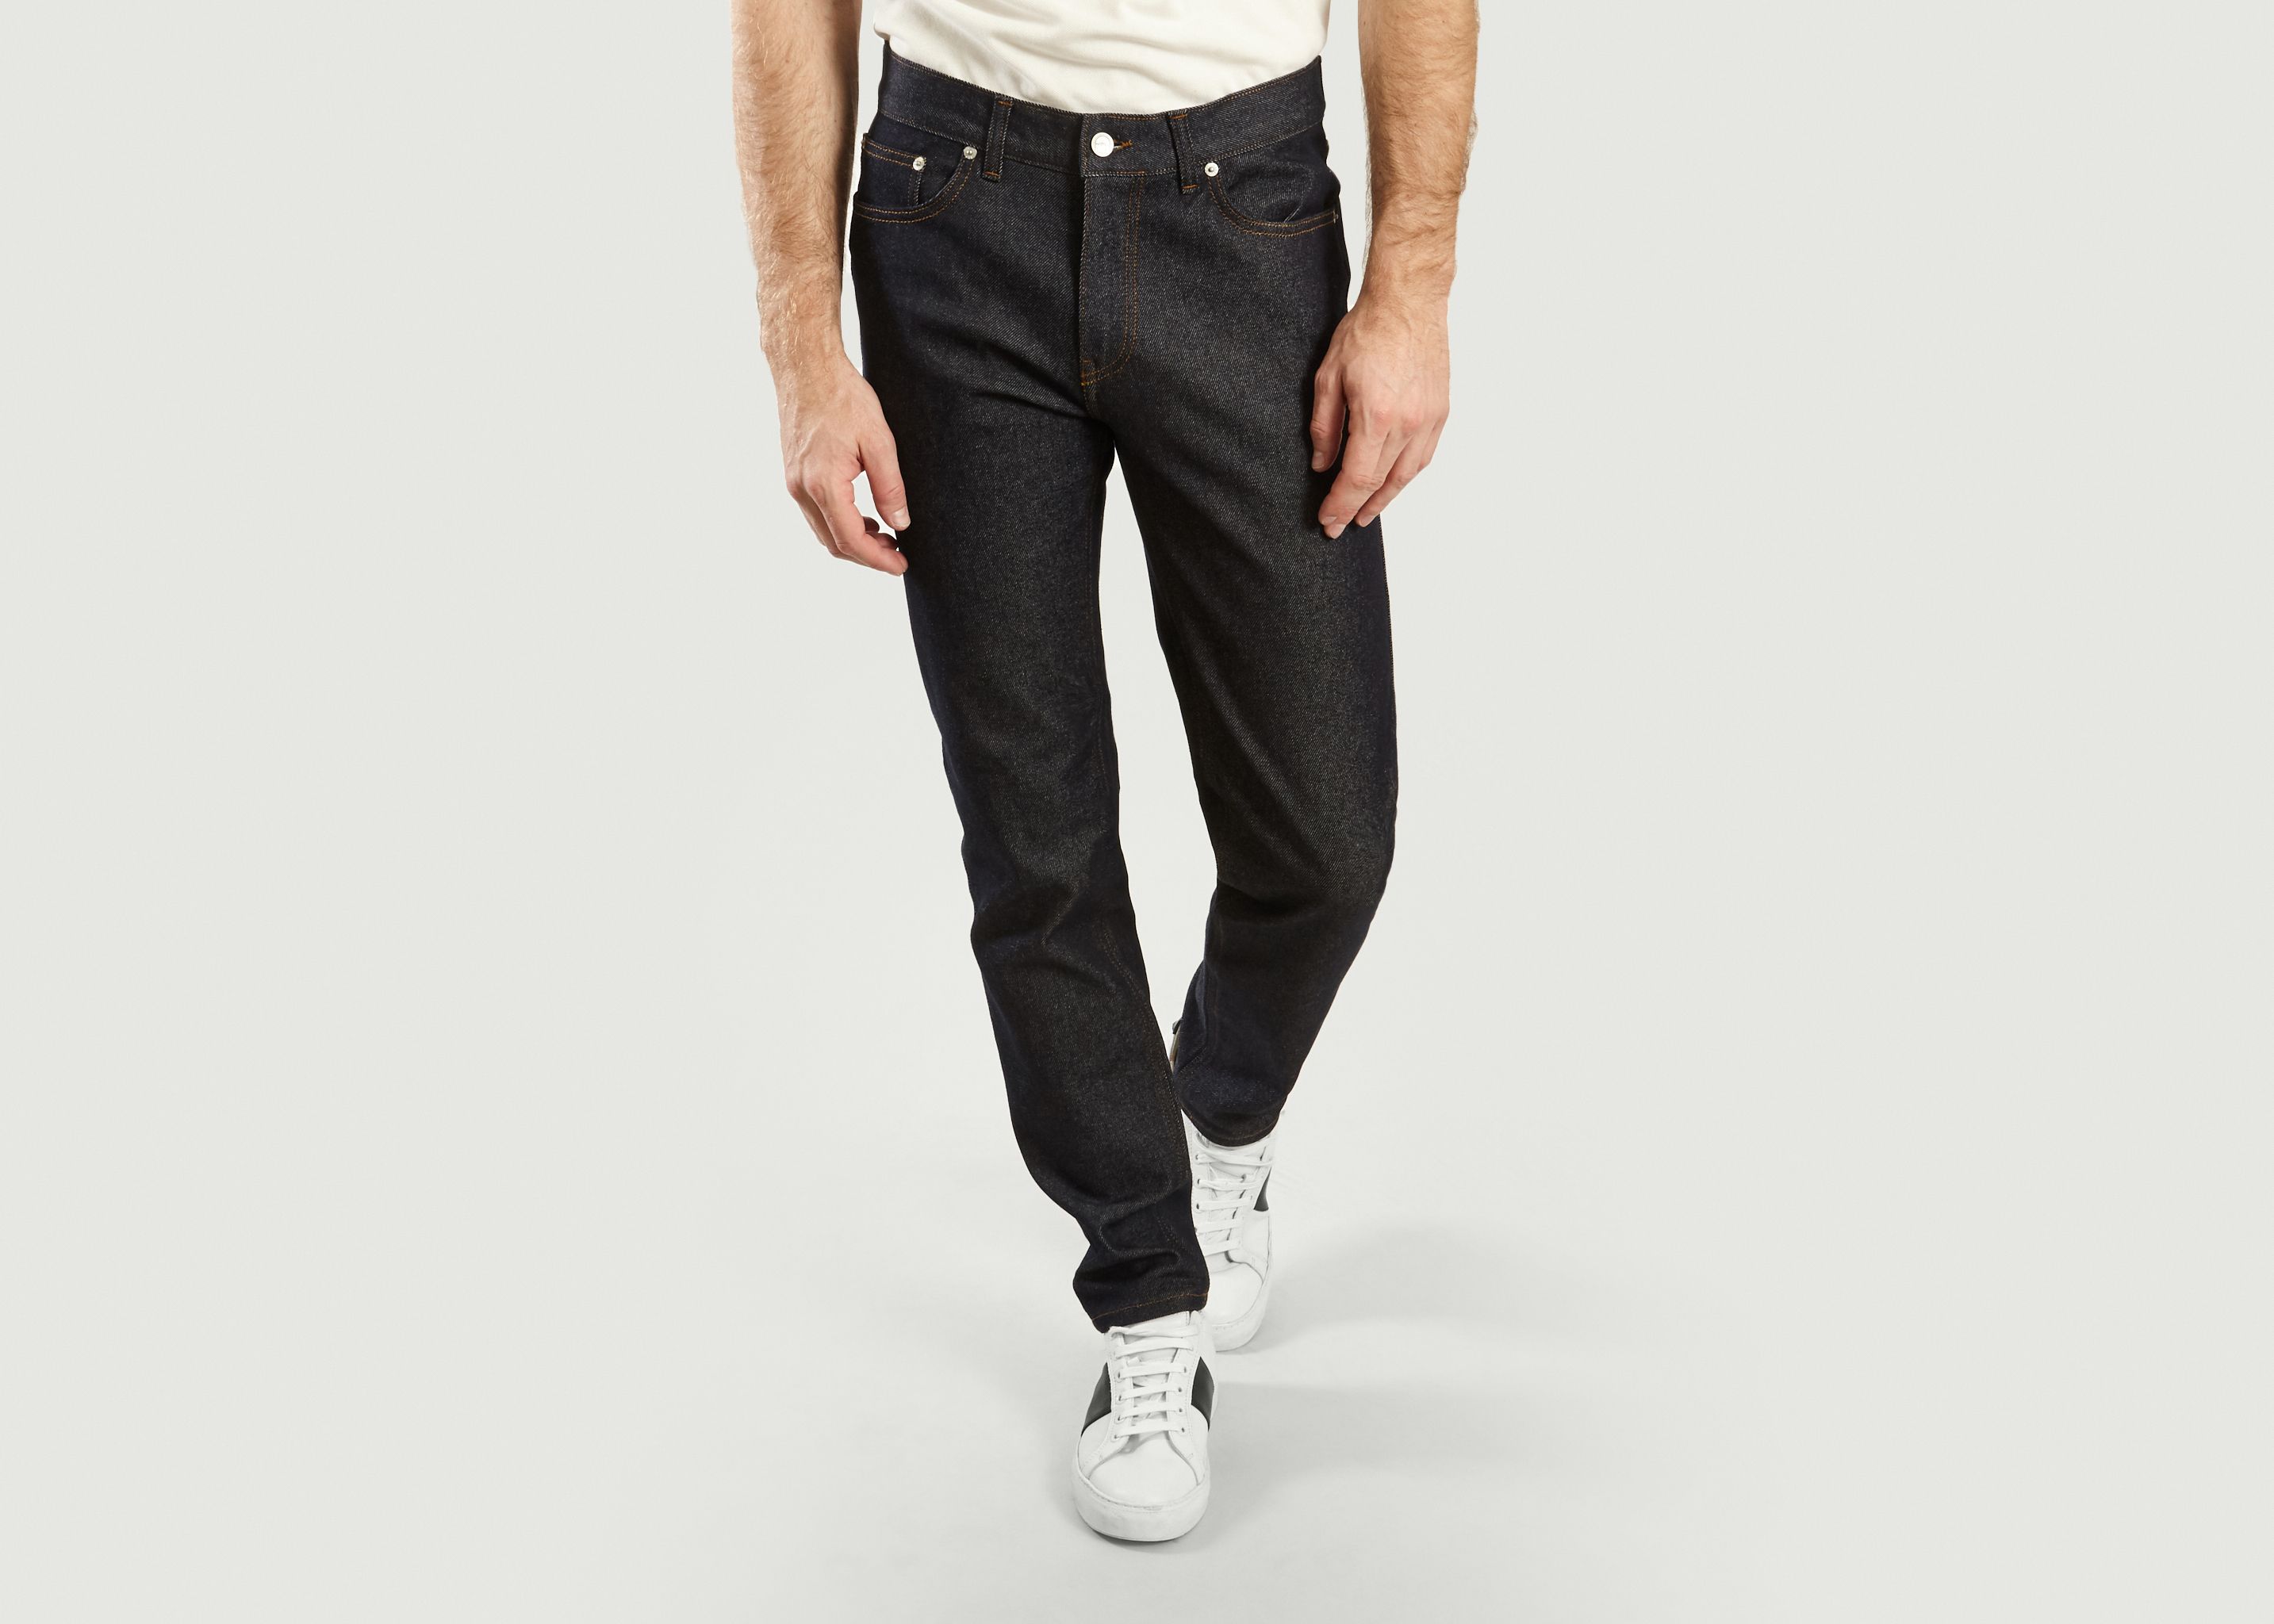 L'Athlétique jeans - 1083